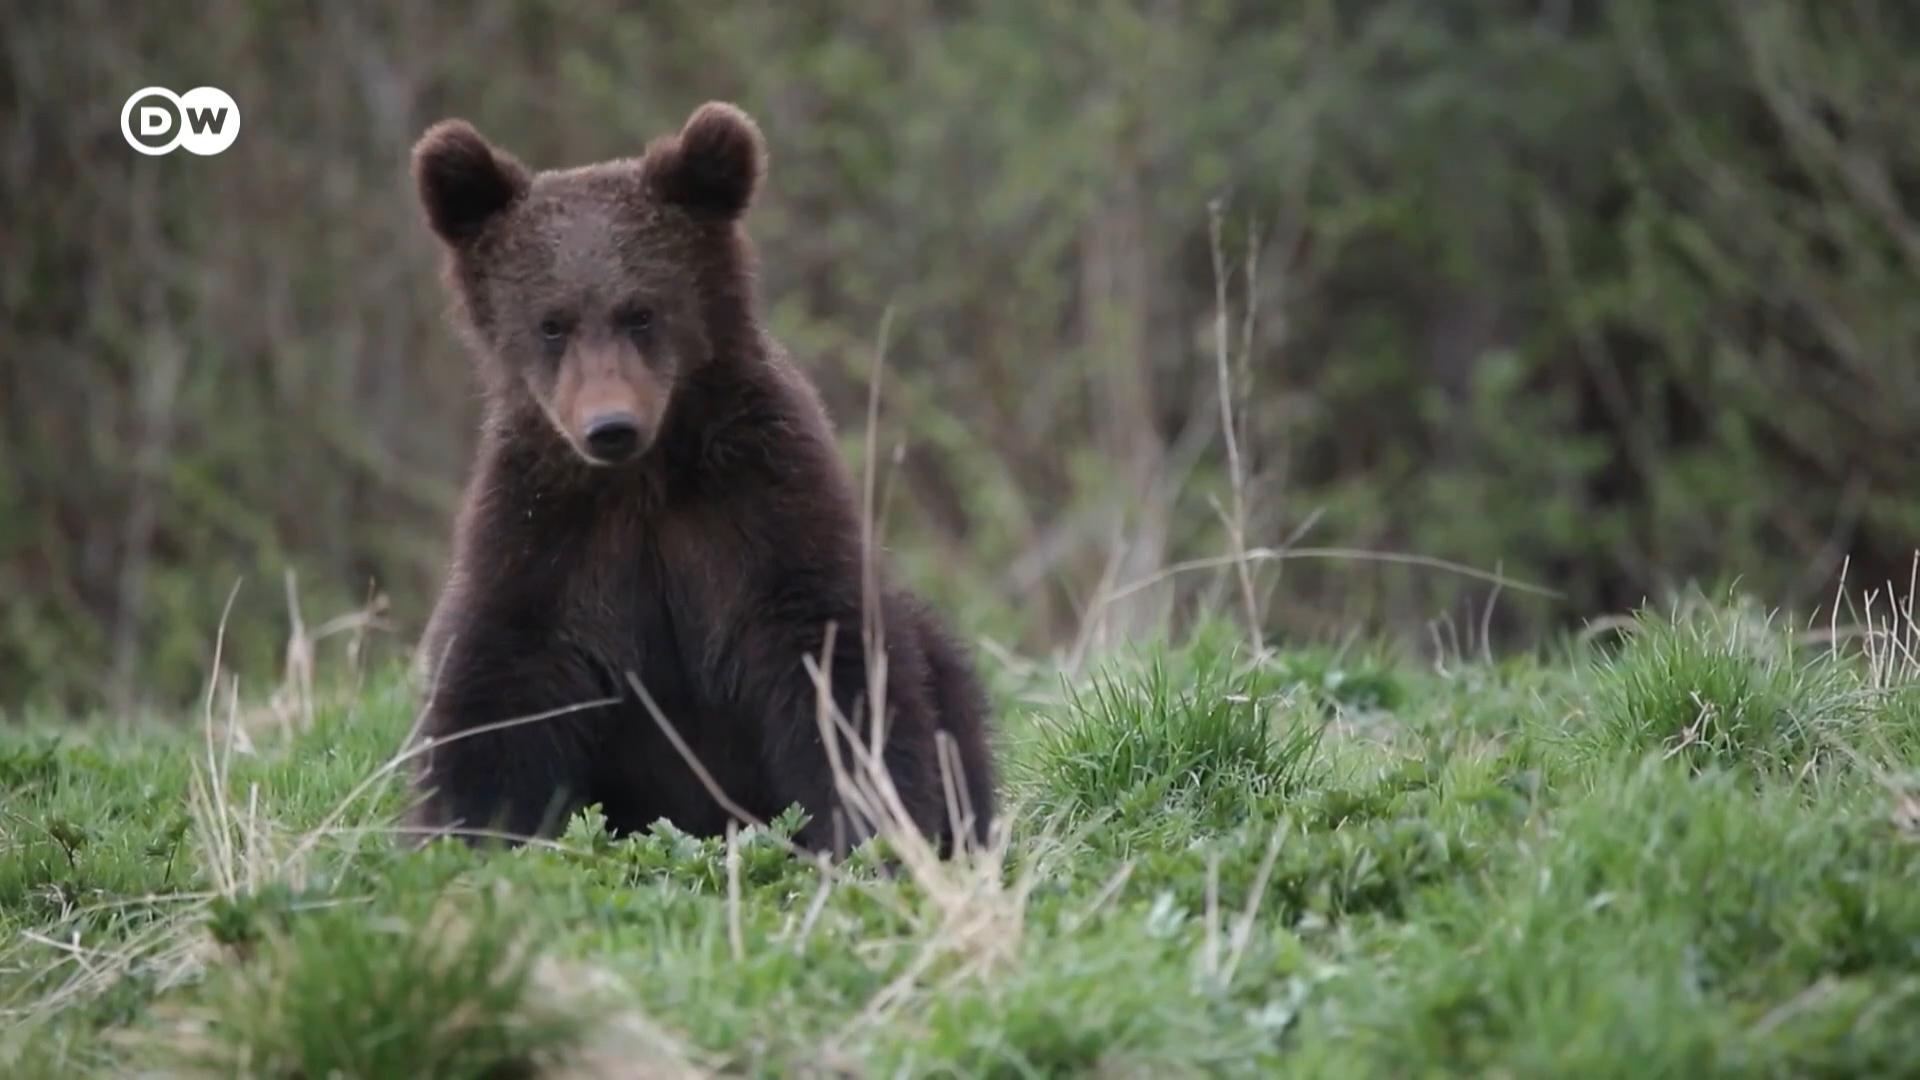 能源价格飙升带动木材需求量上涨，波兰的伐木业正因此蓬勃发展。但这也导致当地的熊失去栖息地面临生存危机。环保人士希望保育老树与野熊，木材业则视熊为一种麻烦。